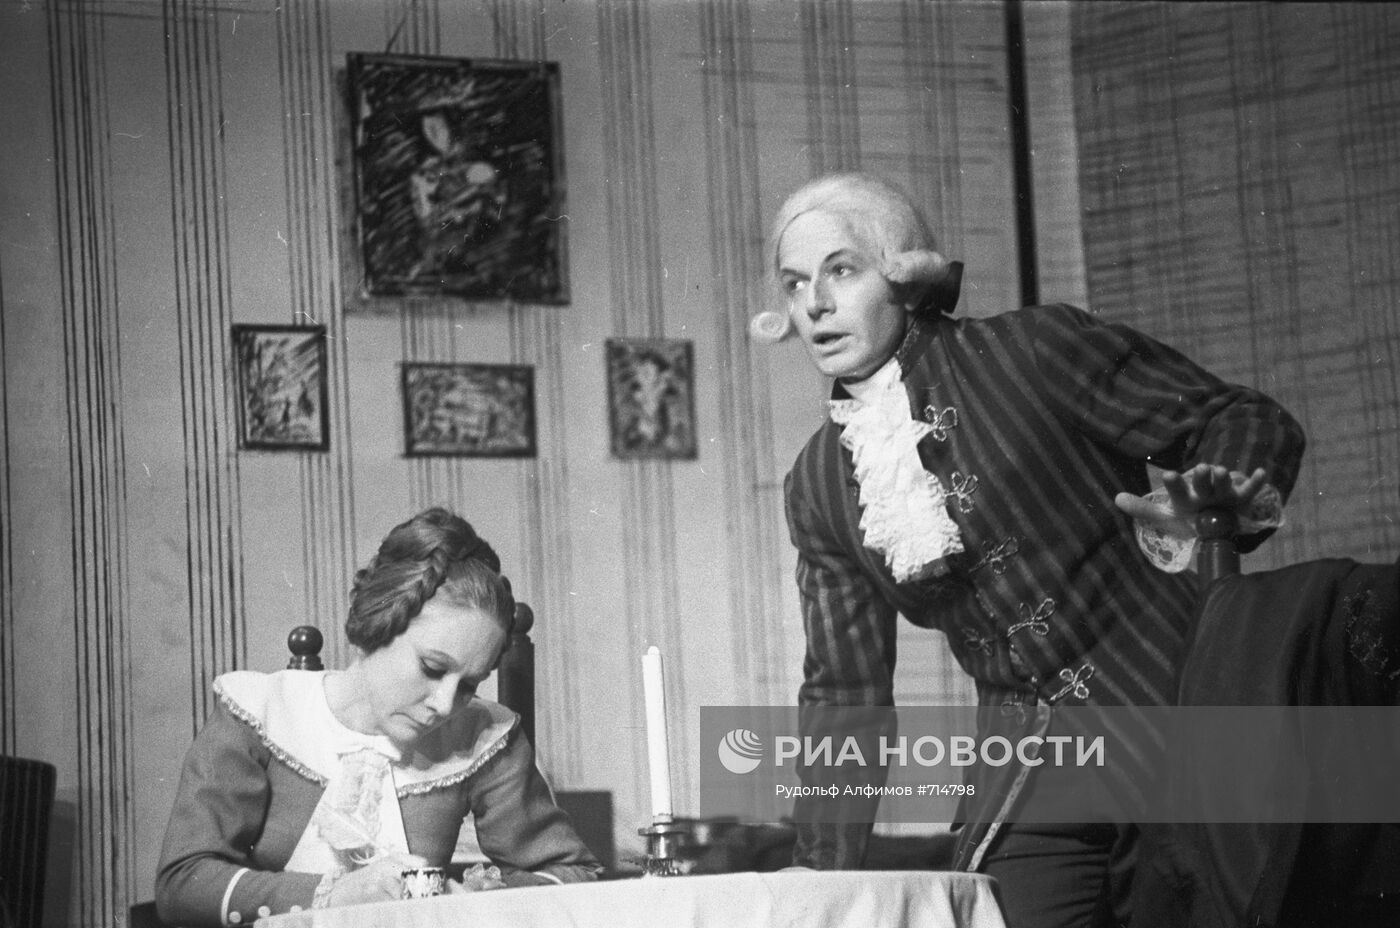 Сцена из спектакля "Коварство и любовь" по пьесе Фридриха фон Шиллера